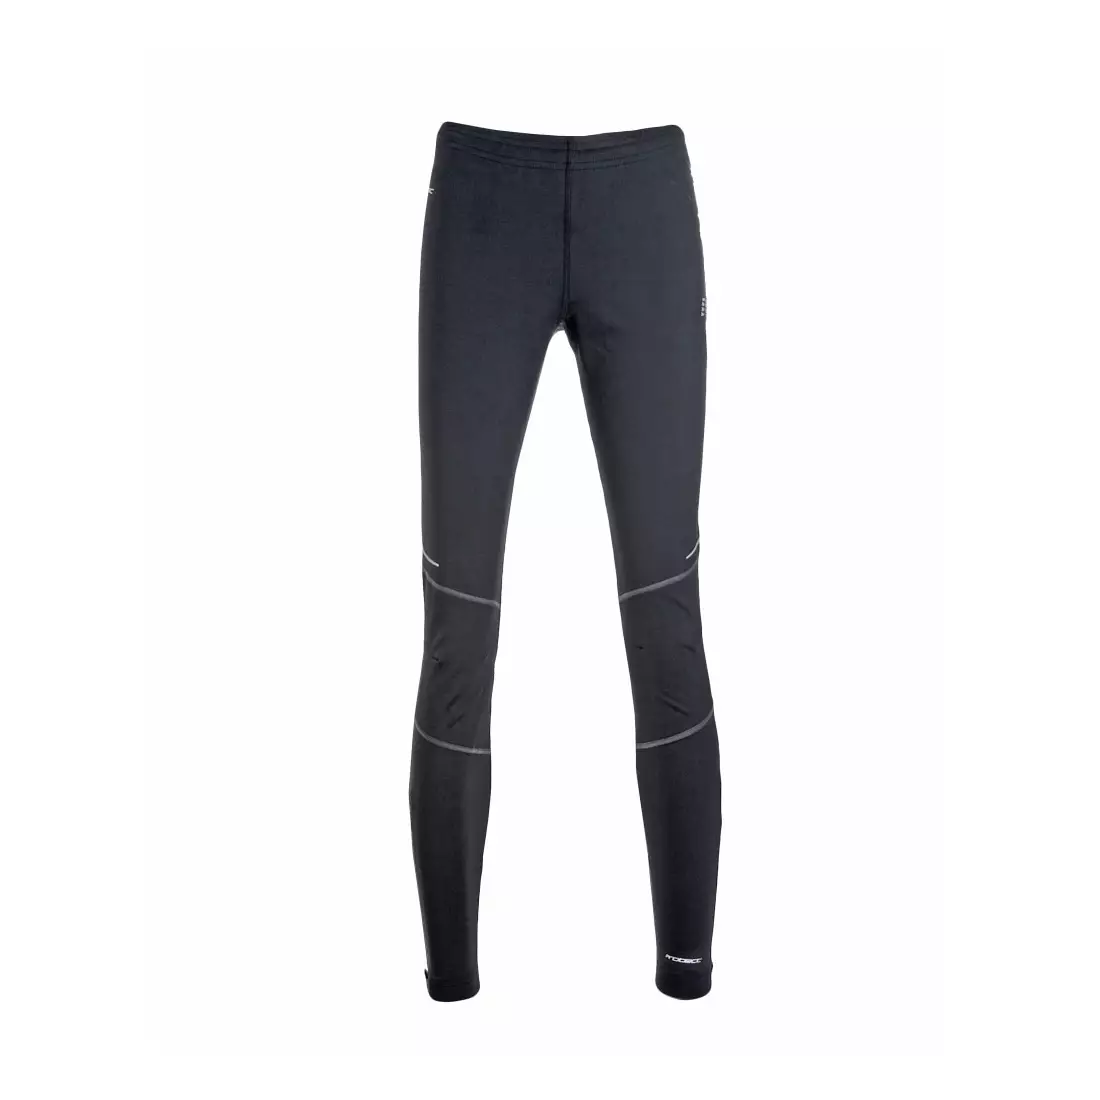 NEWLINE ICONIC PROTECT TGHTS 10132-060 - pantaloni izolați pentru alergare pentru femei, culoare: Negru